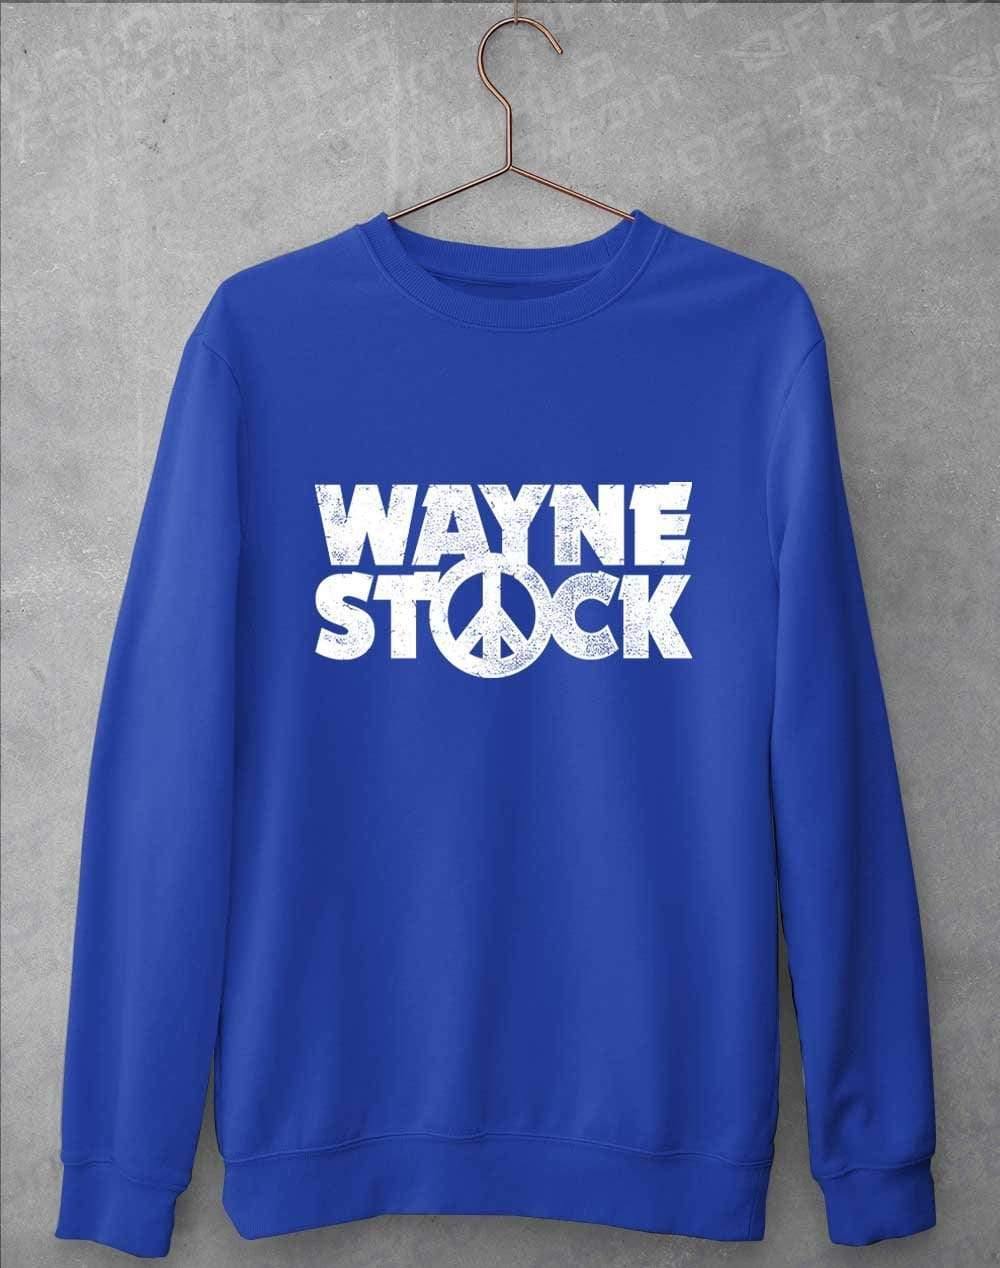 Waynestock Sweatshirt S / Royal Blue  - Off World Tees